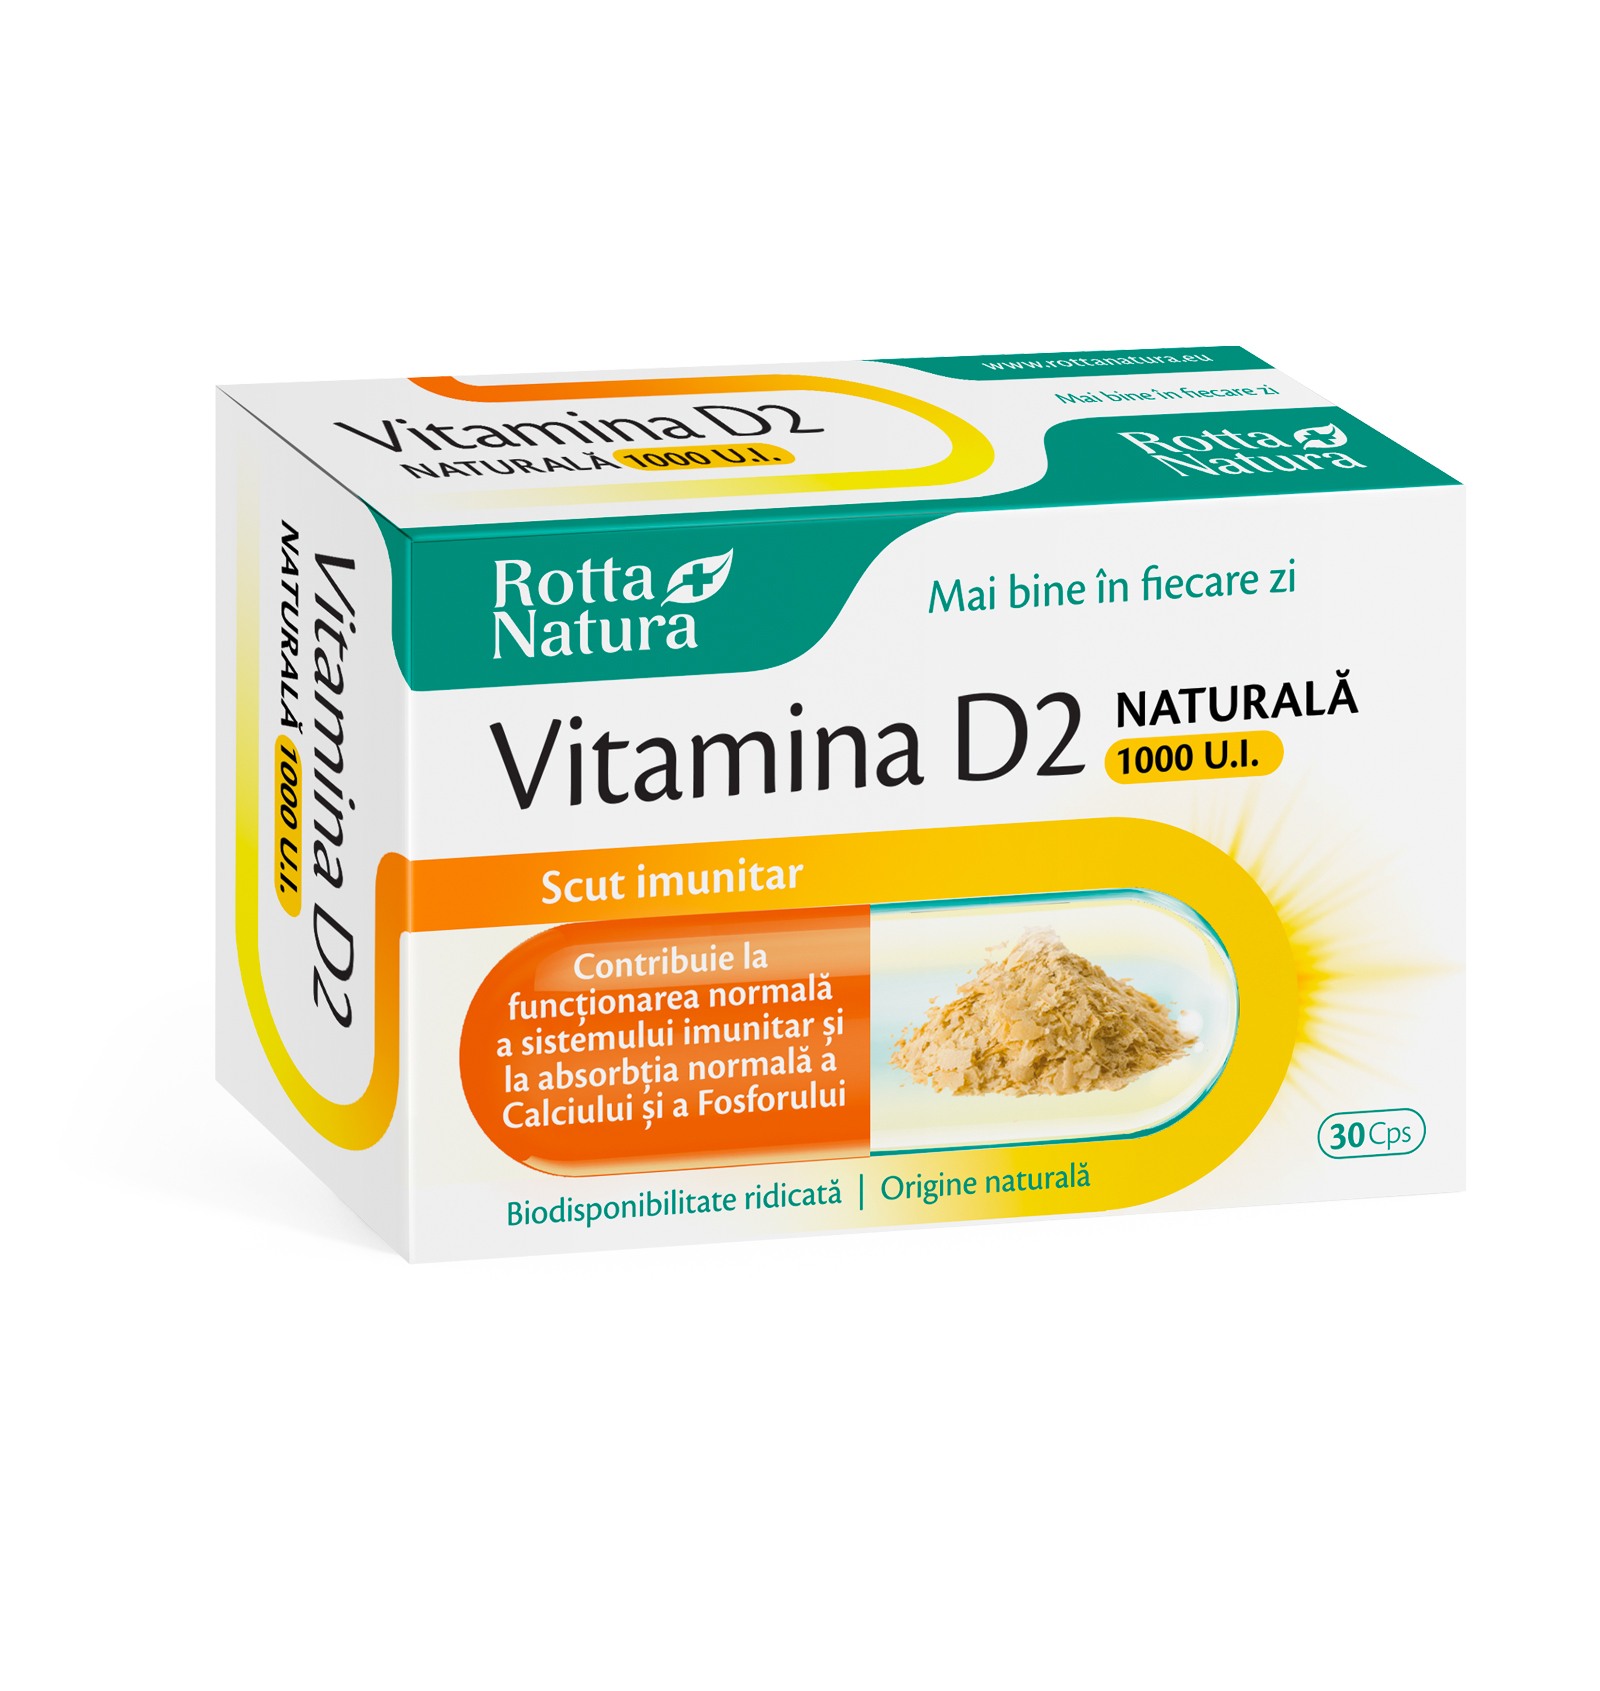 Imunitate - Vitamina D2 naturală, 1000ui, 30 capsule, Rotta Natura, sinapis.ro